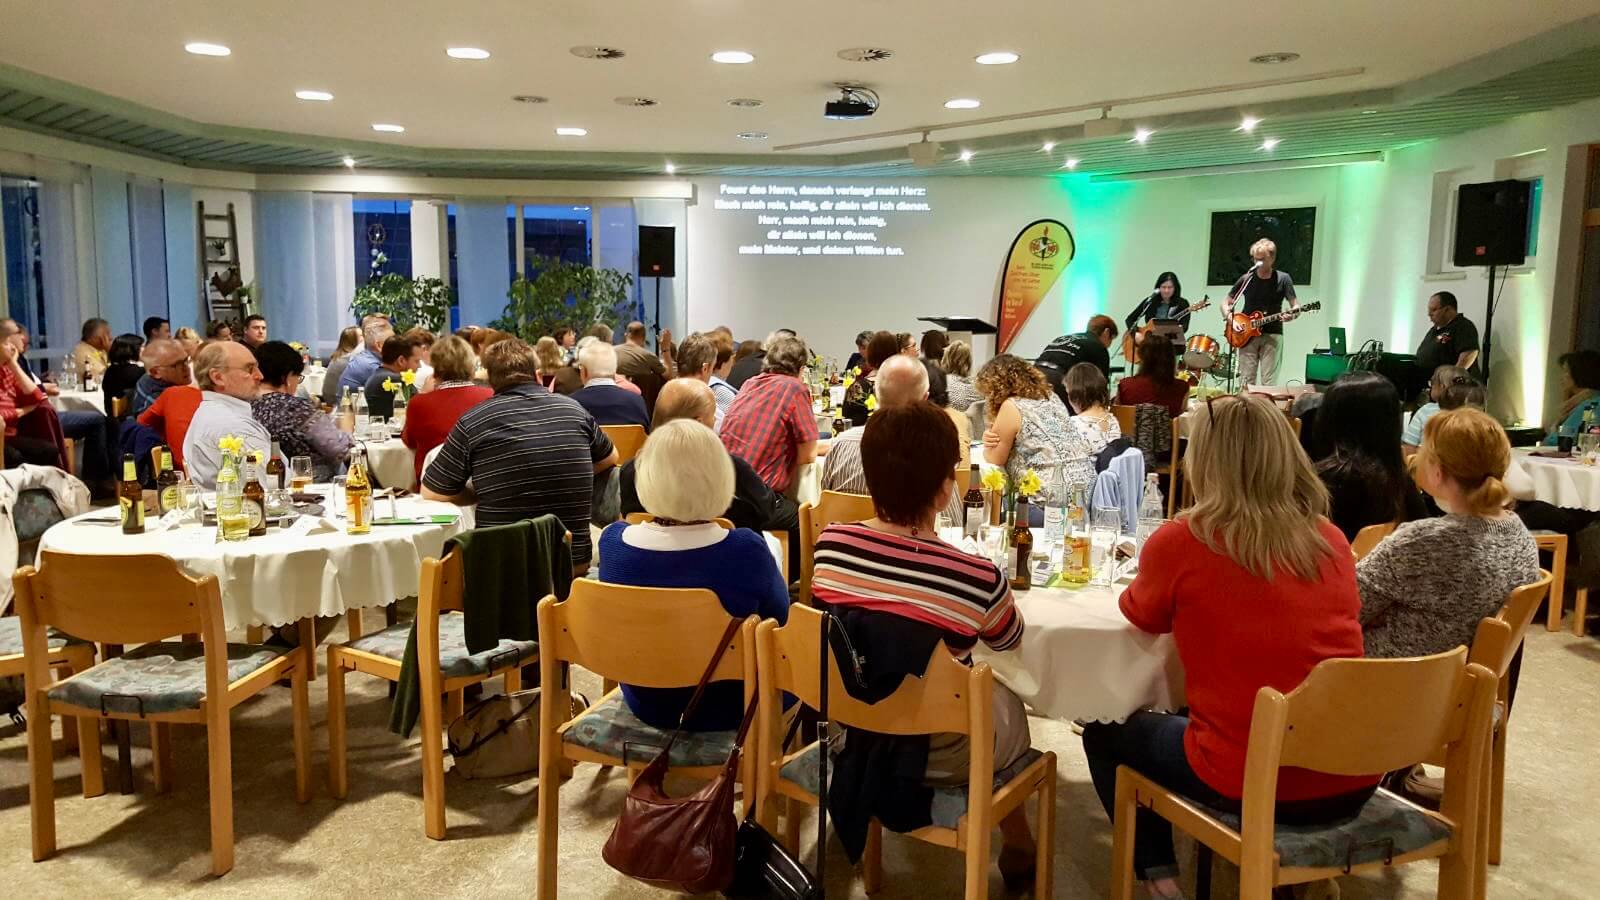 FGBMFI | Christen im Beruf - Chapter Heilbronn - Hohenlohe